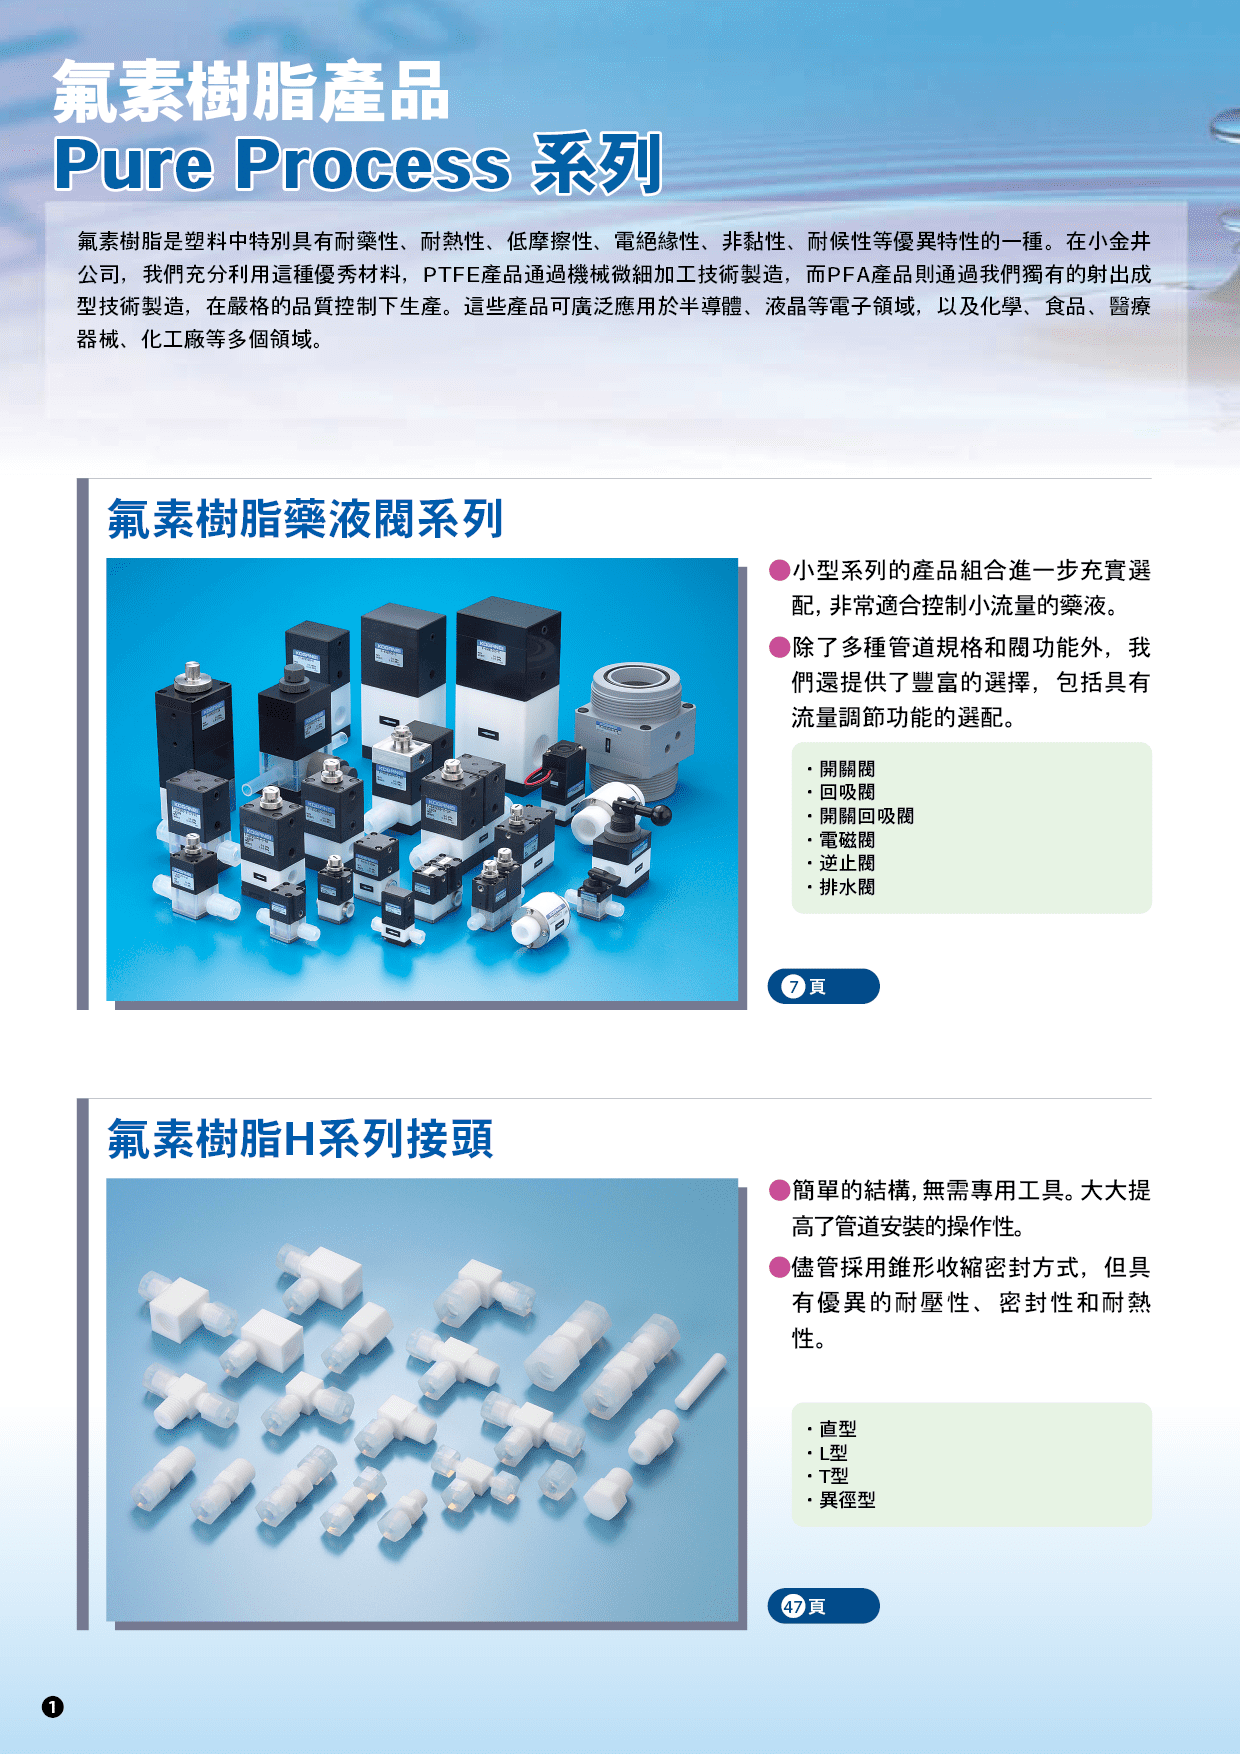 氟素樹脂產品Pure Process系列-產品特色2(開關藥液閥)